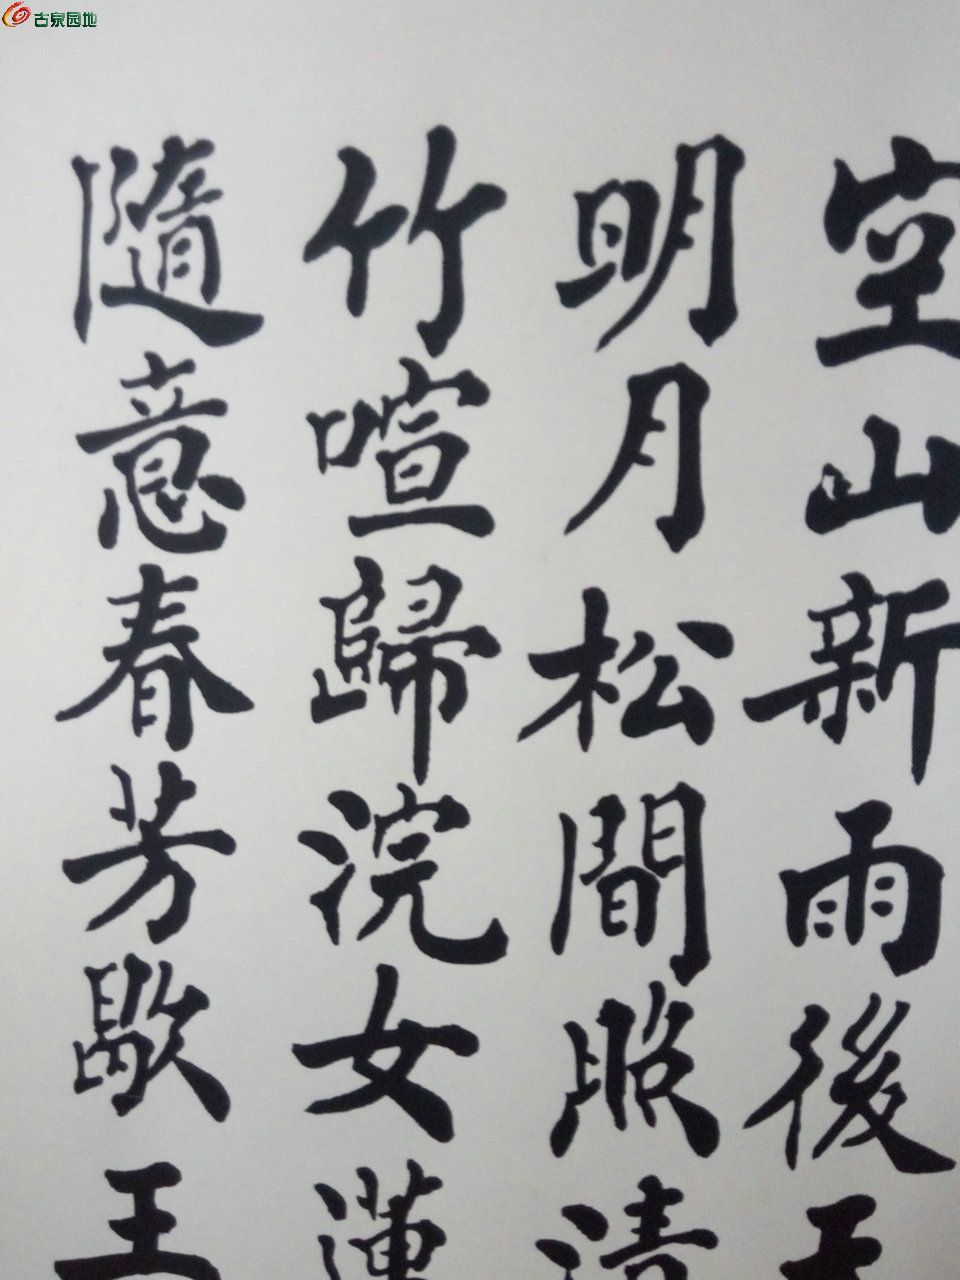 所见的最完美的书法:山东名家文史馆长李俊昌的楷书真迹